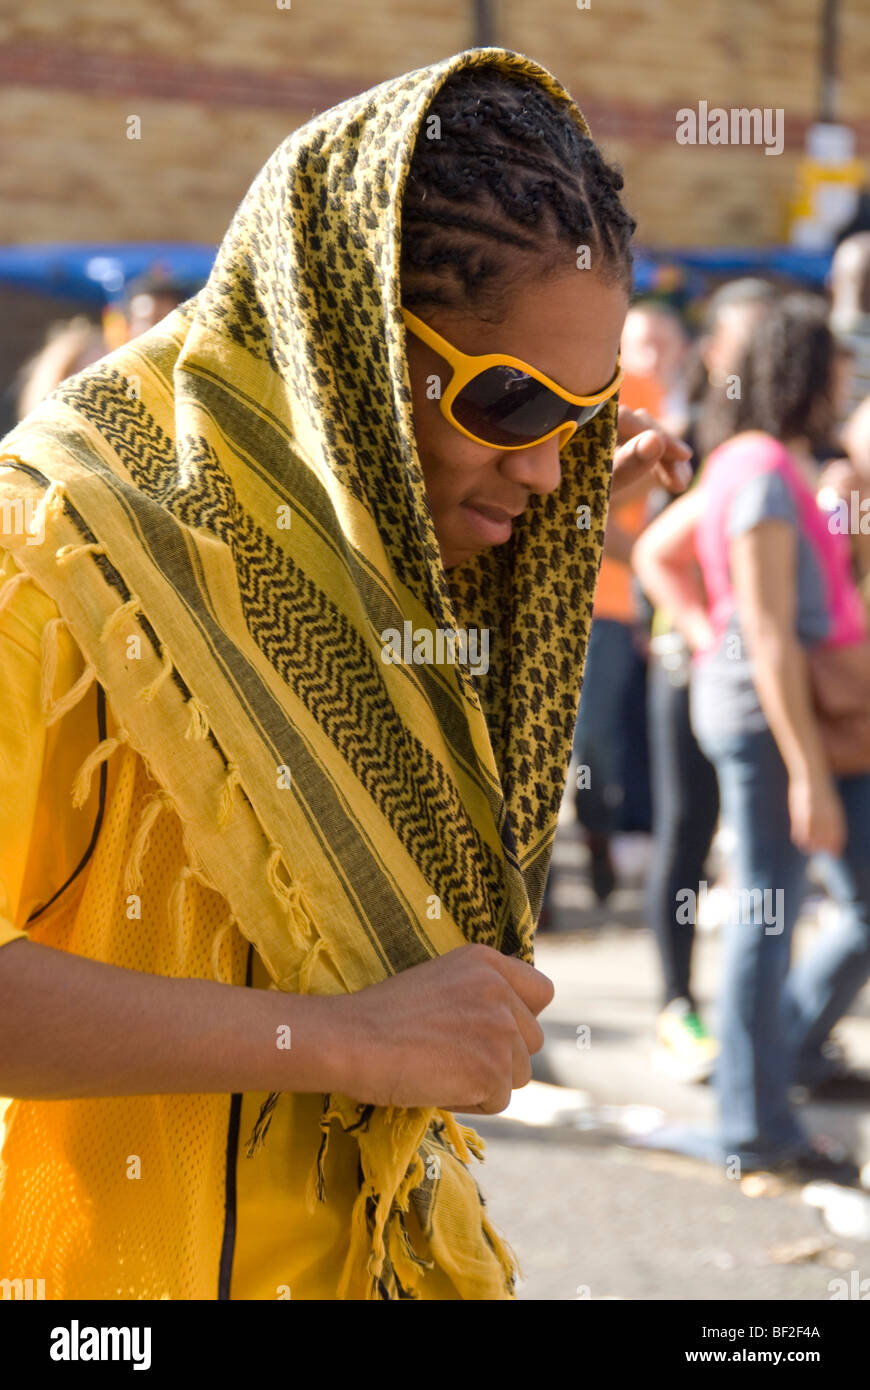 Homme avec foulard jaune Photo Stock - Alamy